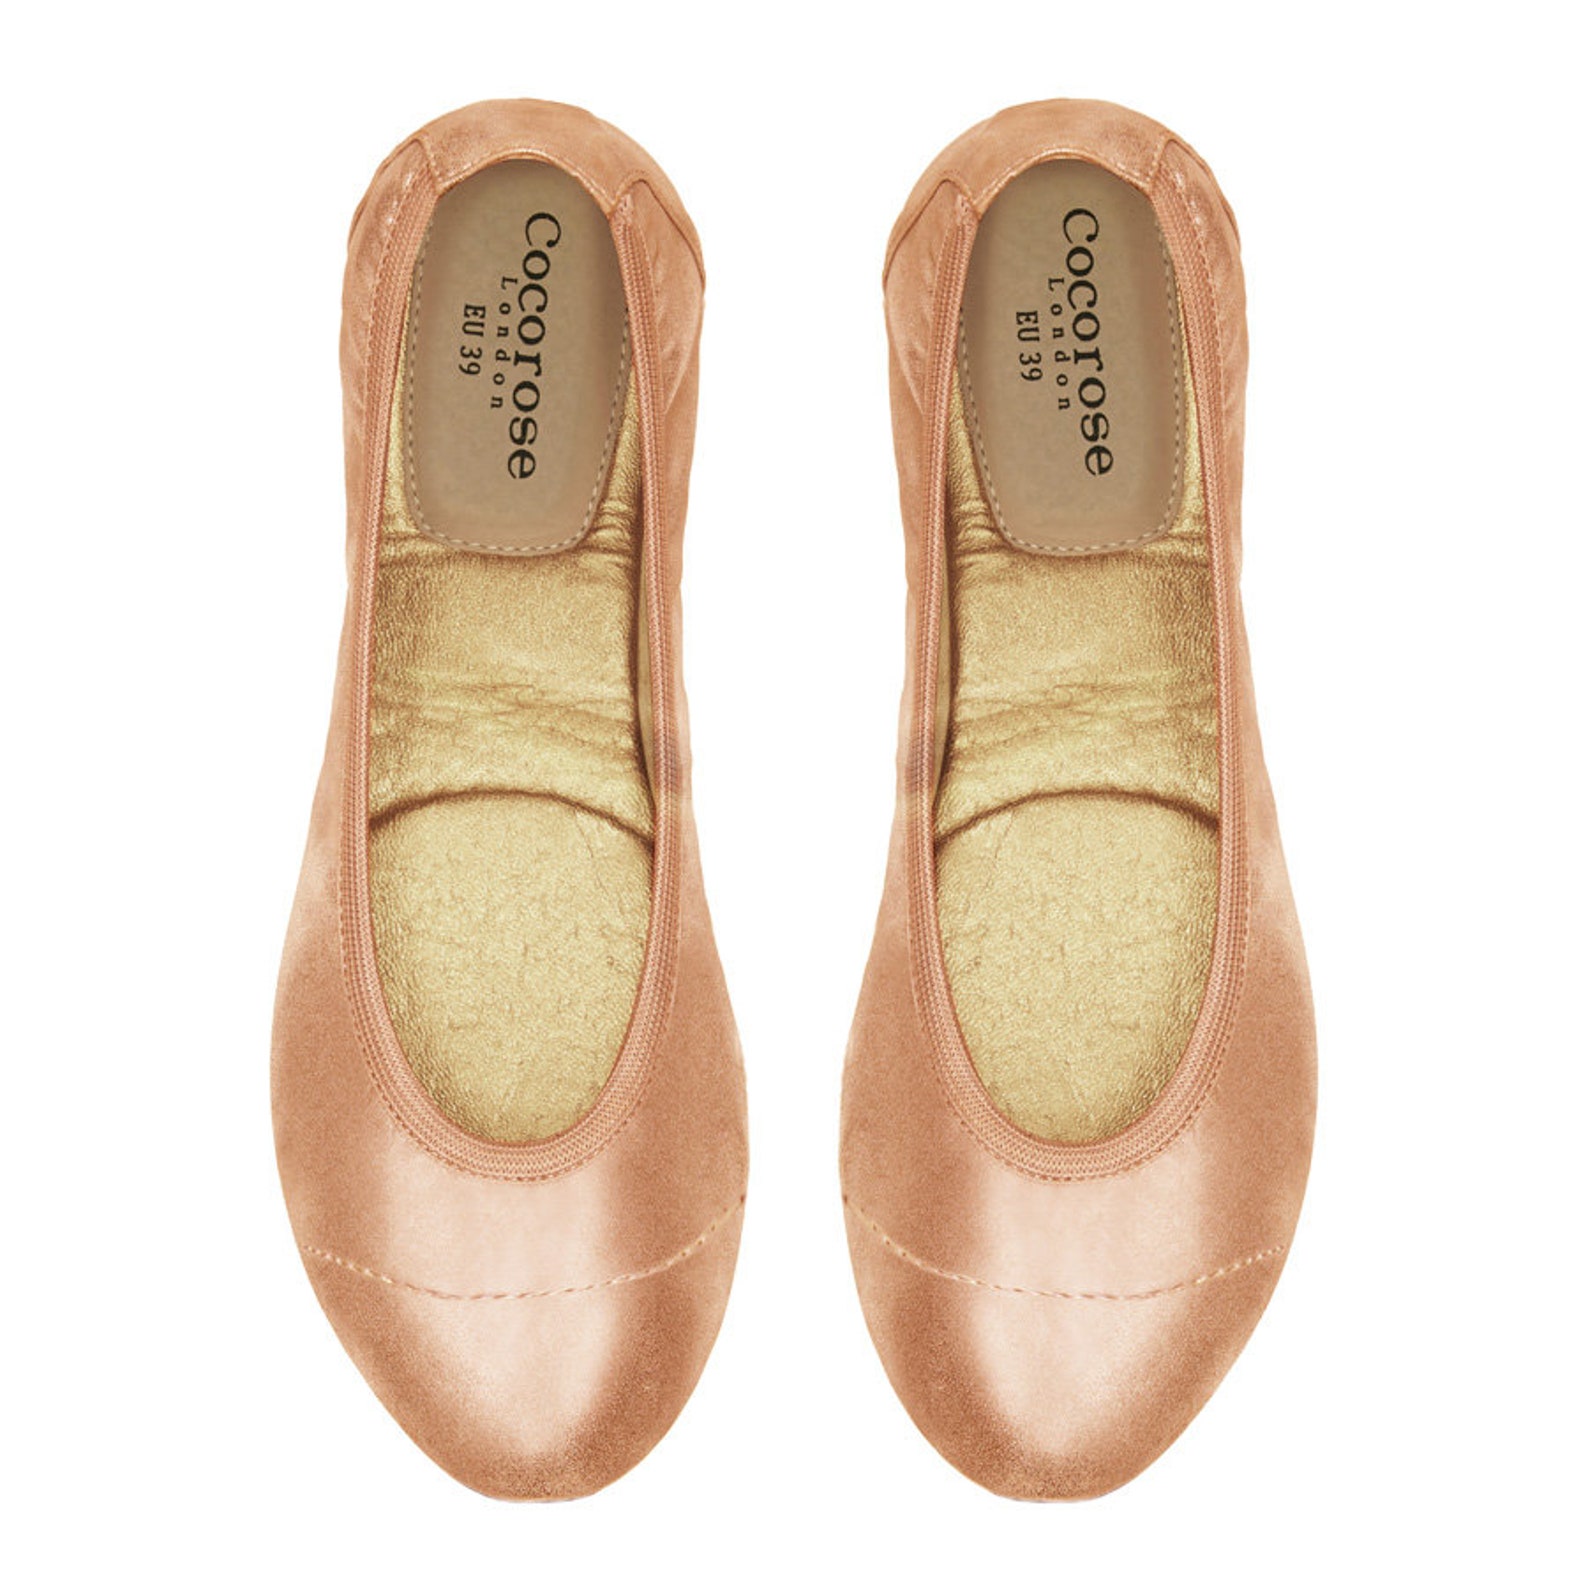 cocorose foldable shoes - barbican ladies ballet pumps